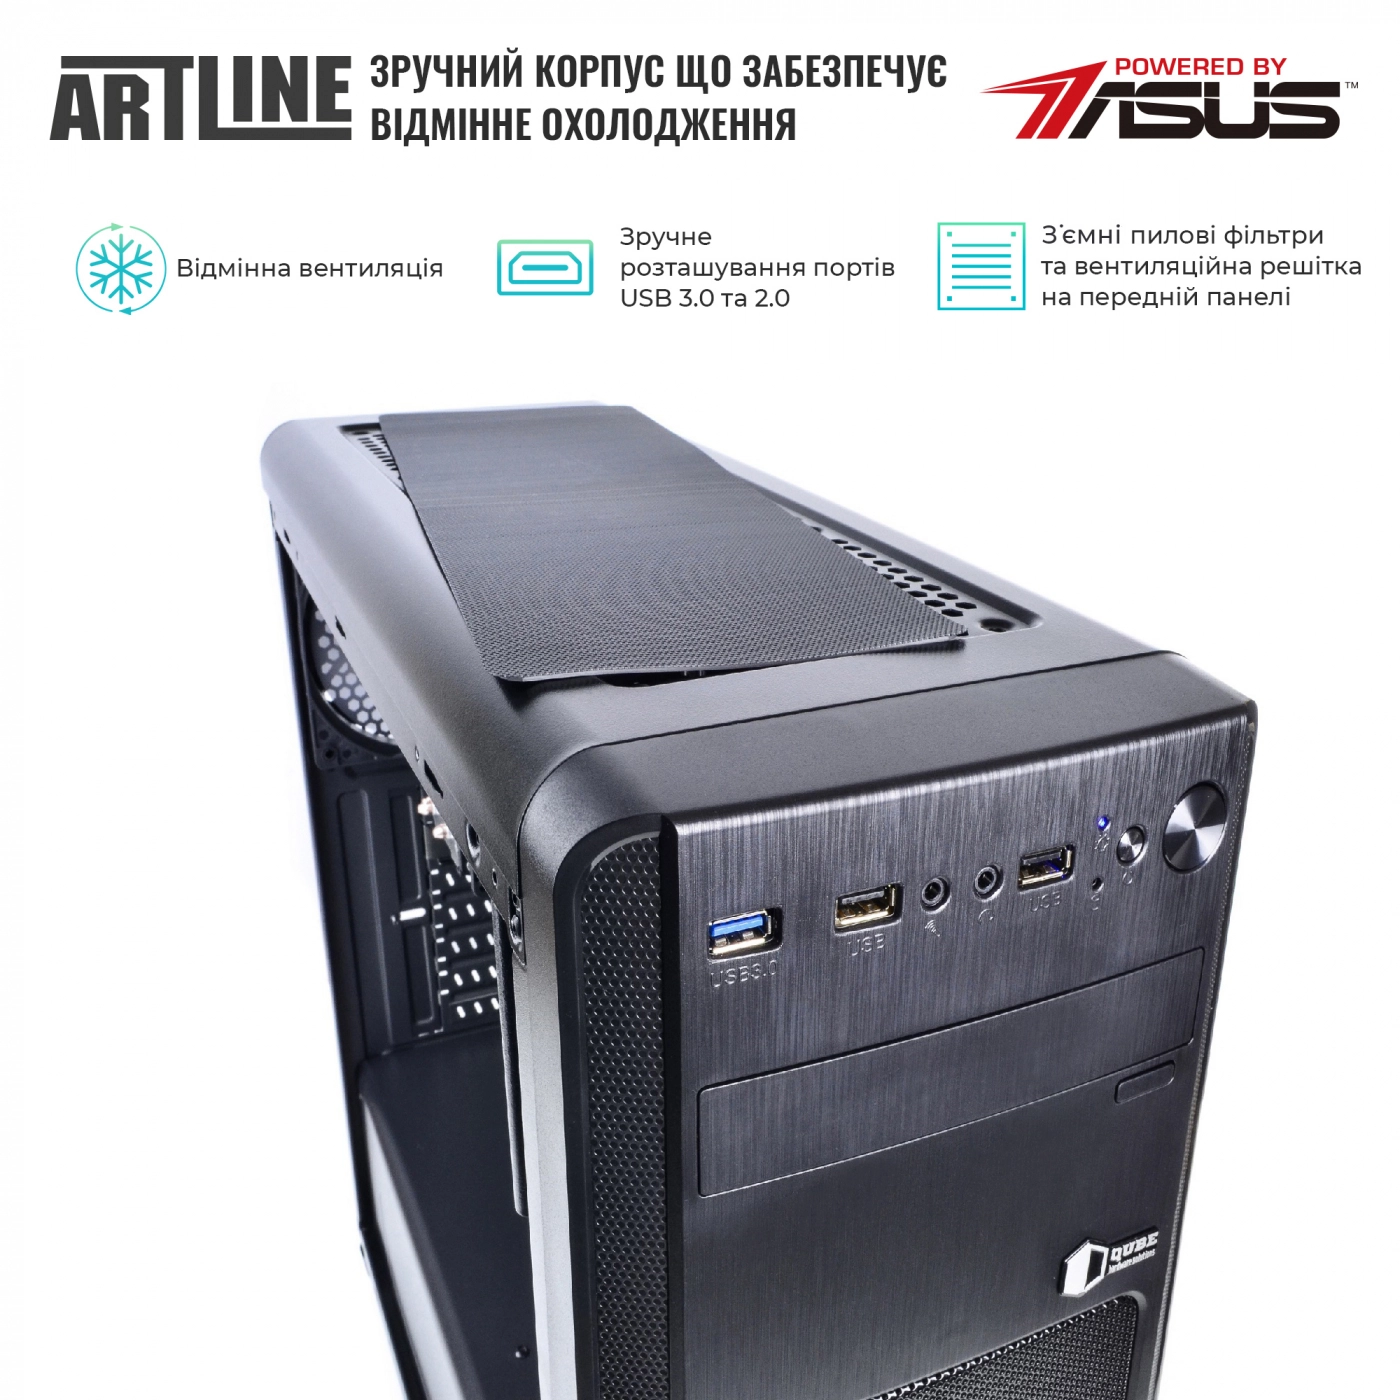 Купить Сервер ARTLINE Business T65v07 - фото 2